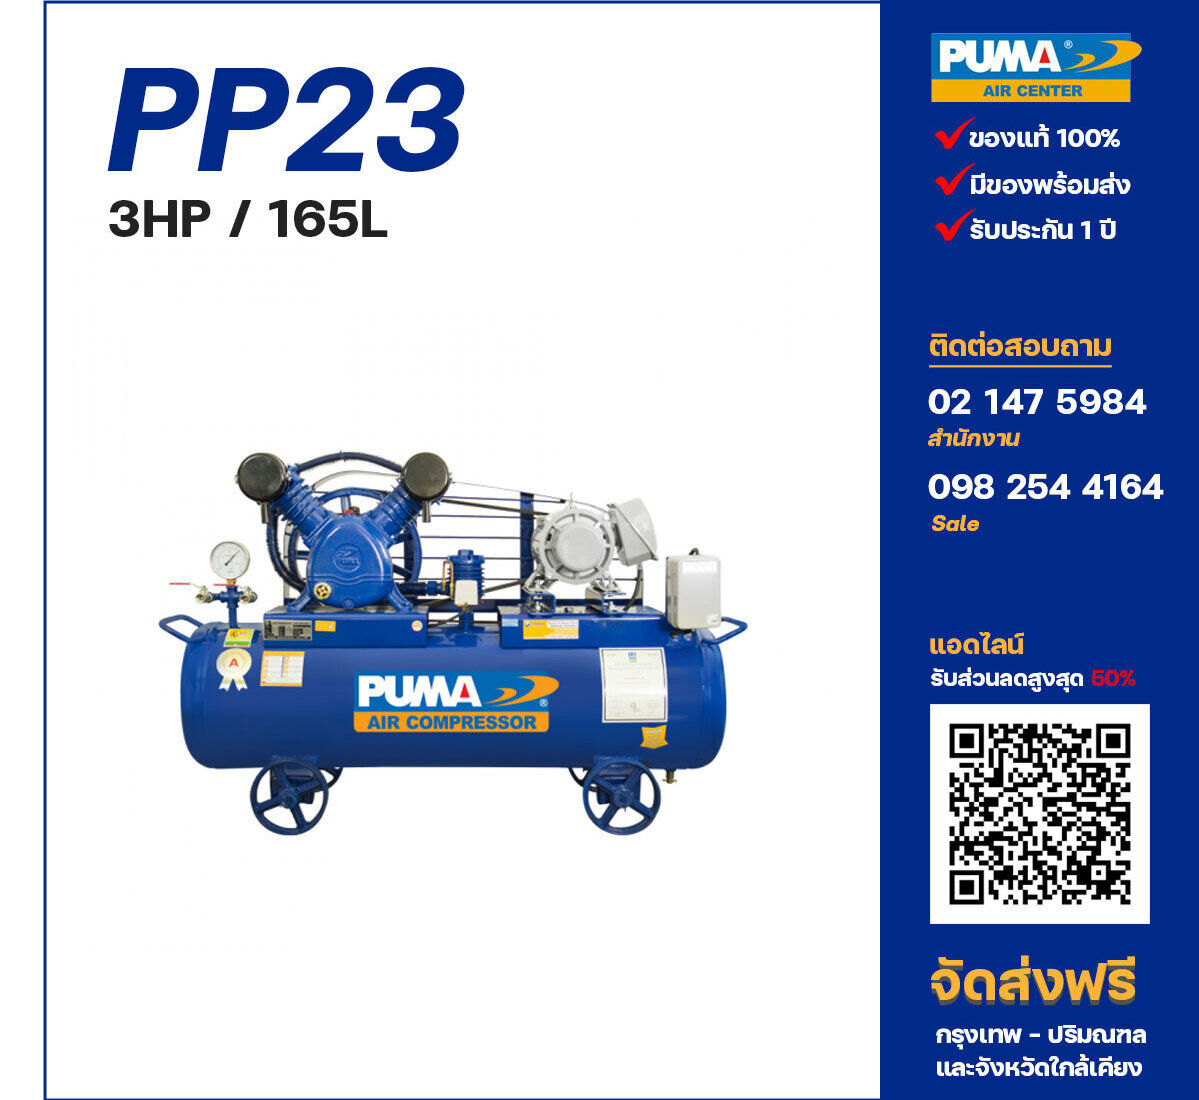 ปั๊มลมพูม่า PUMA PP23-PPM220V/380V ปั๊มลมลูกสูบ ขนาด 2 สูบ 3 แรงม้า 165 ลิตร PUMA พร้อมมอเตอร์ PUMA ไฟ 220V/380V ส่งฟรี กรุงเทพฯ-ปริมณฑล รับประกัน 1 ปี